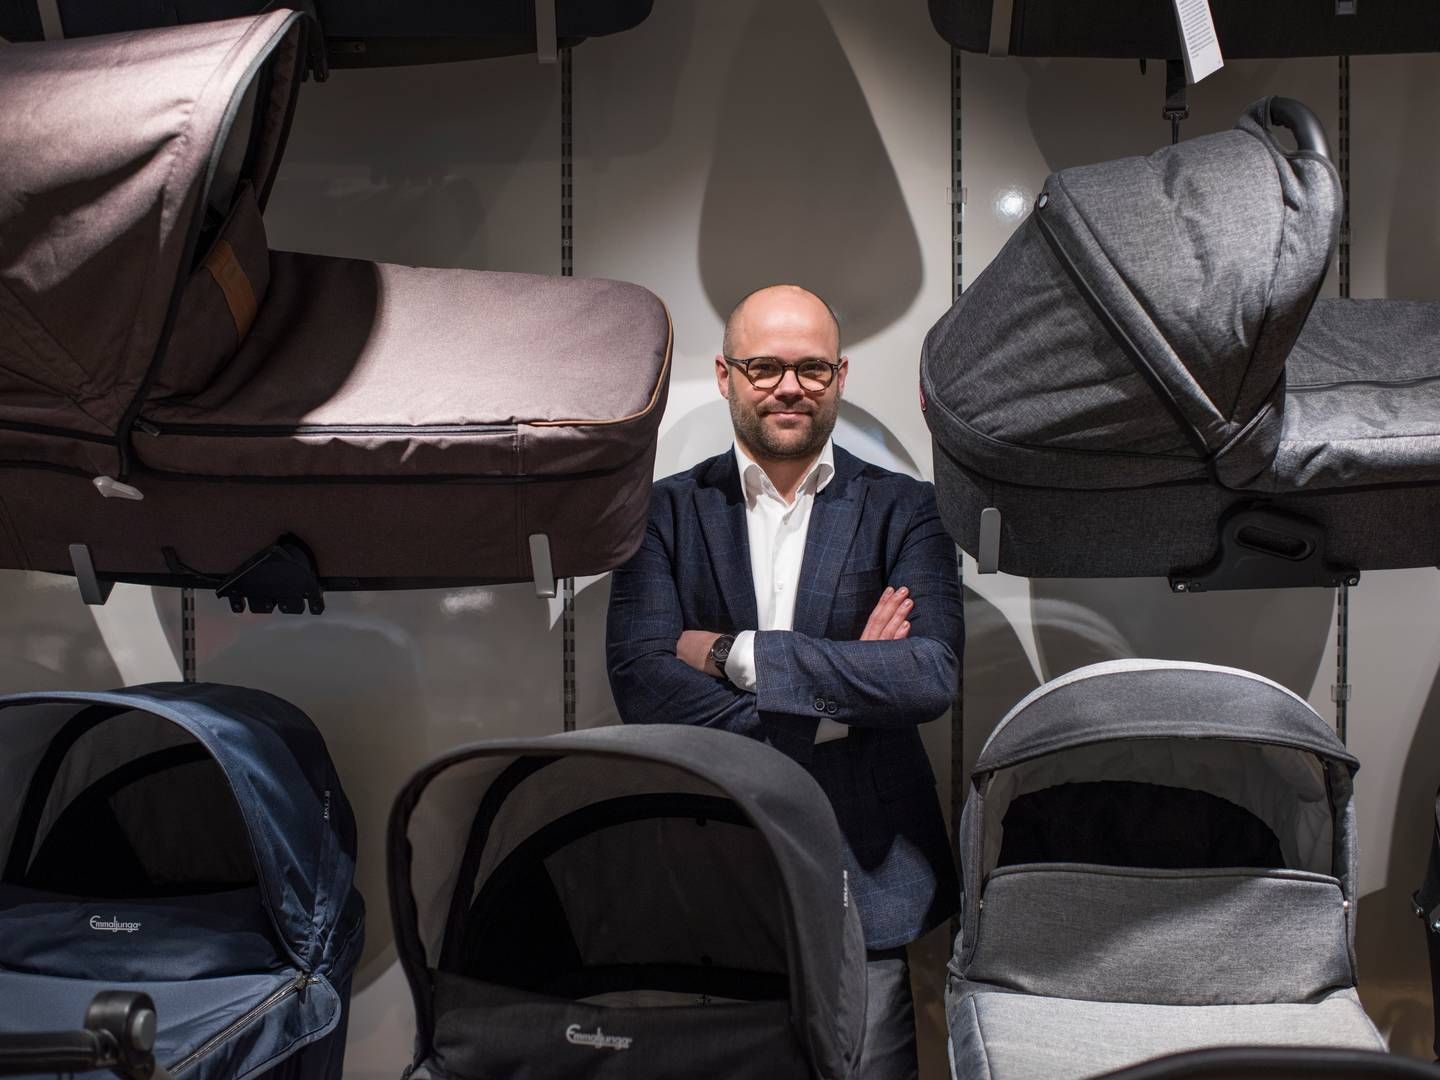 Kenneth Nørgaard glæder sig over opkøbet af den svenske babykæde, der er en del af planerne for at blive nordisk markedsleder på babyproduktmarkedet. | Photo: Joachim Ladefoged